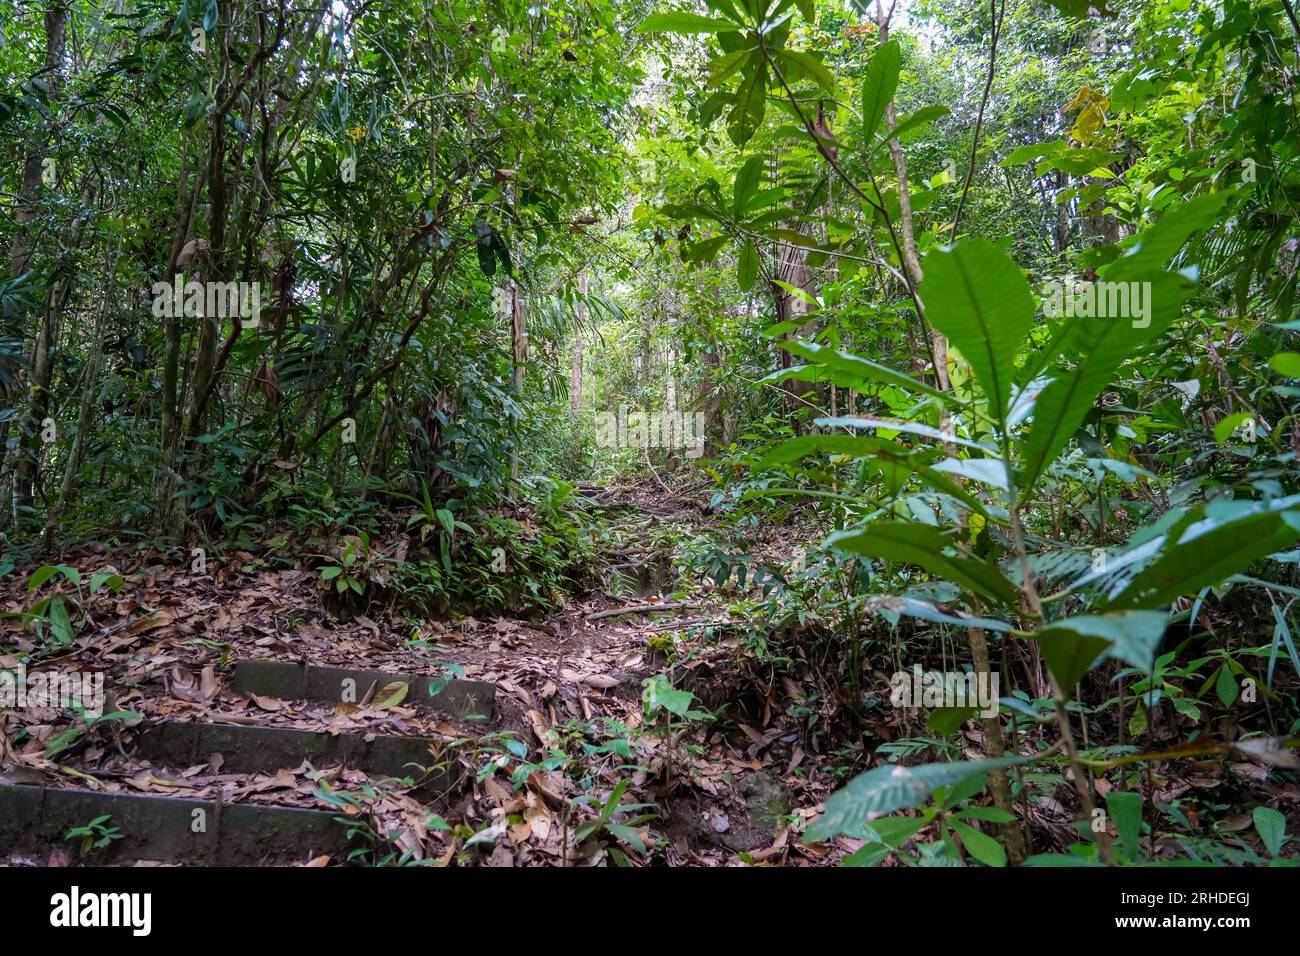 Forêt tropicale humide. Sentier de randonnée dans Fraser's Hill Forest, Malaisie. Un chemin dans la jungle entouré de buissons verts et de feuilles. Feuillage luxuriant en tropique Banque D'Images